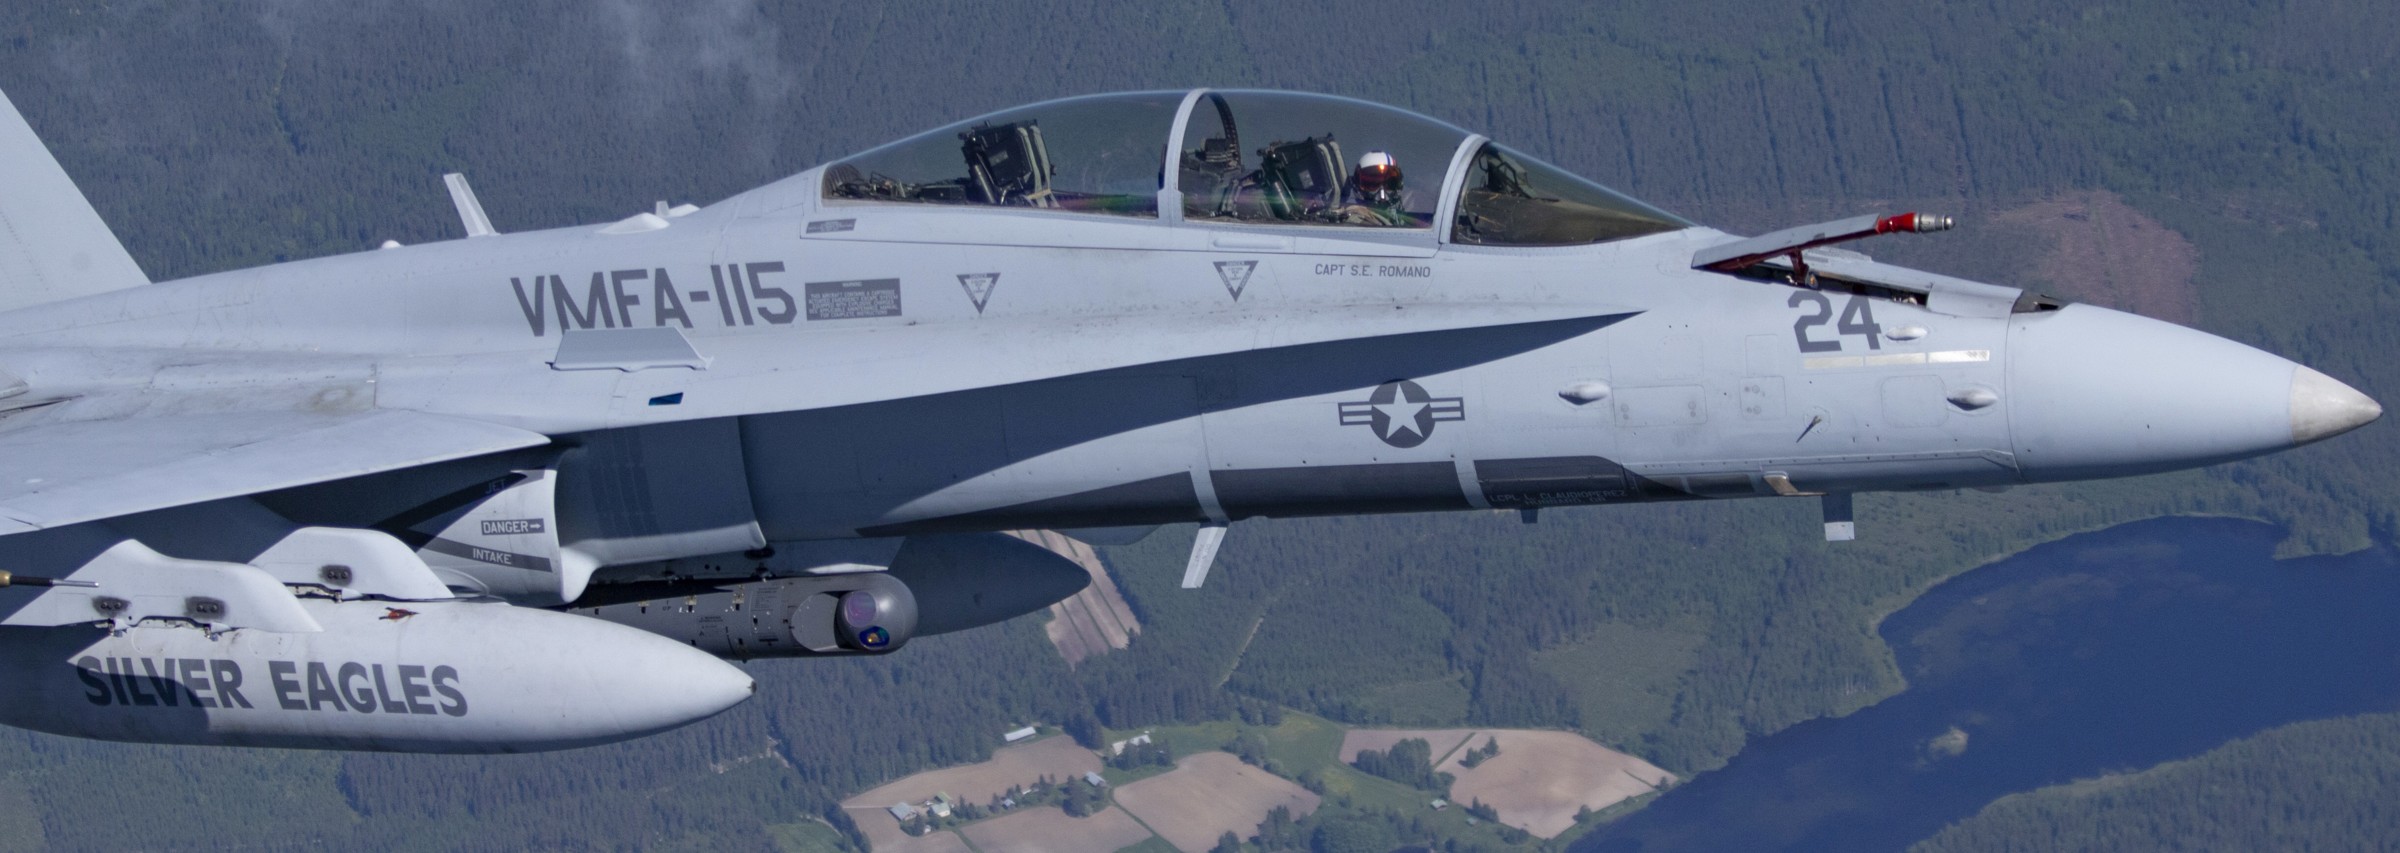 vmfa-115 silver eagles marine fighter attack squadron usmc f/a-18d hornet 214 rissala kuopio air base finland